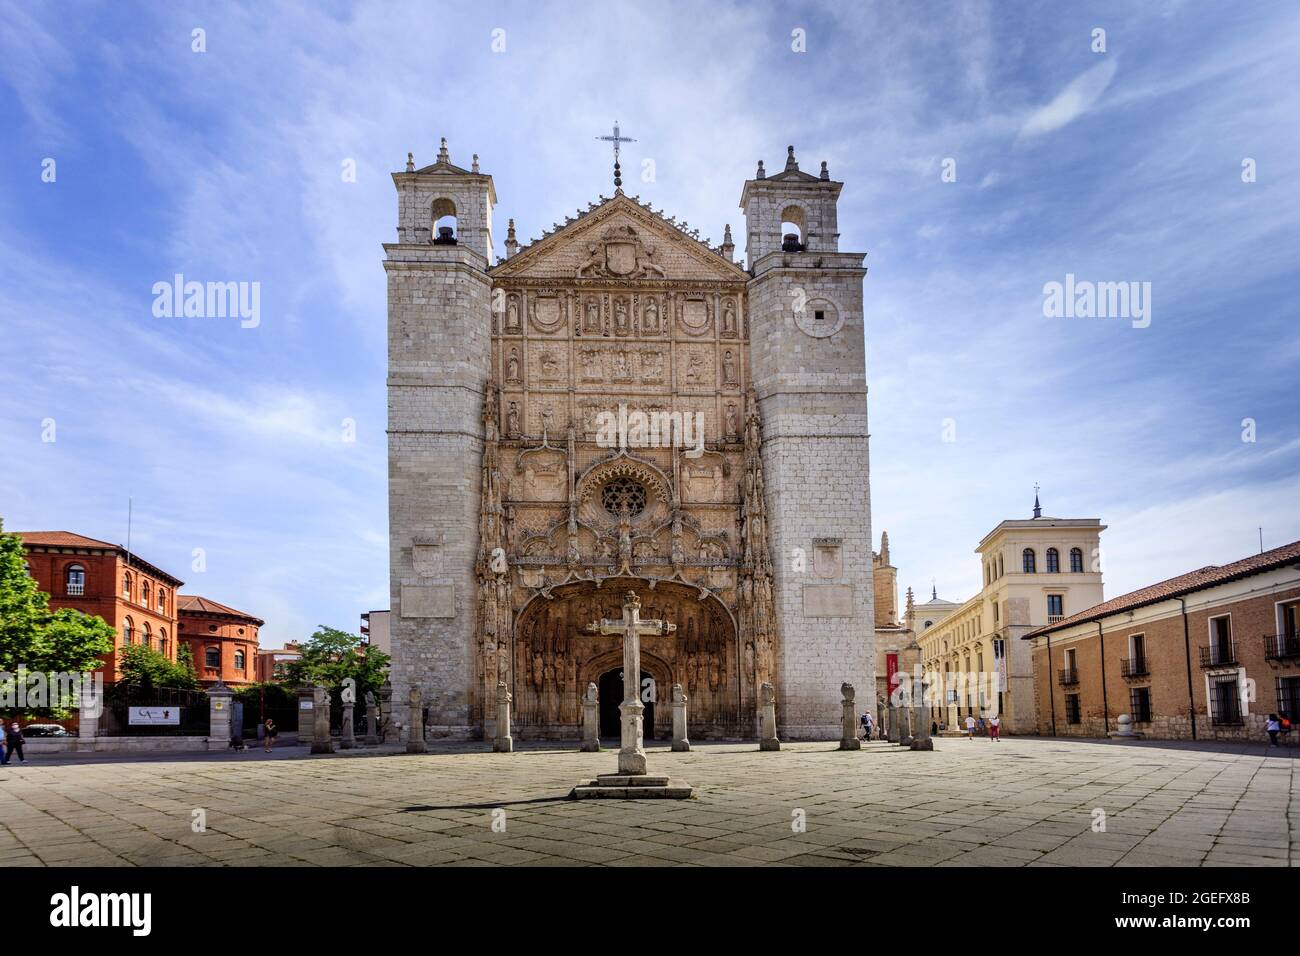 Église Saint-Pierre et monastère. C'est un monument gothique daté du XV siècle. Valladolid. Espagne. Banque D'Images